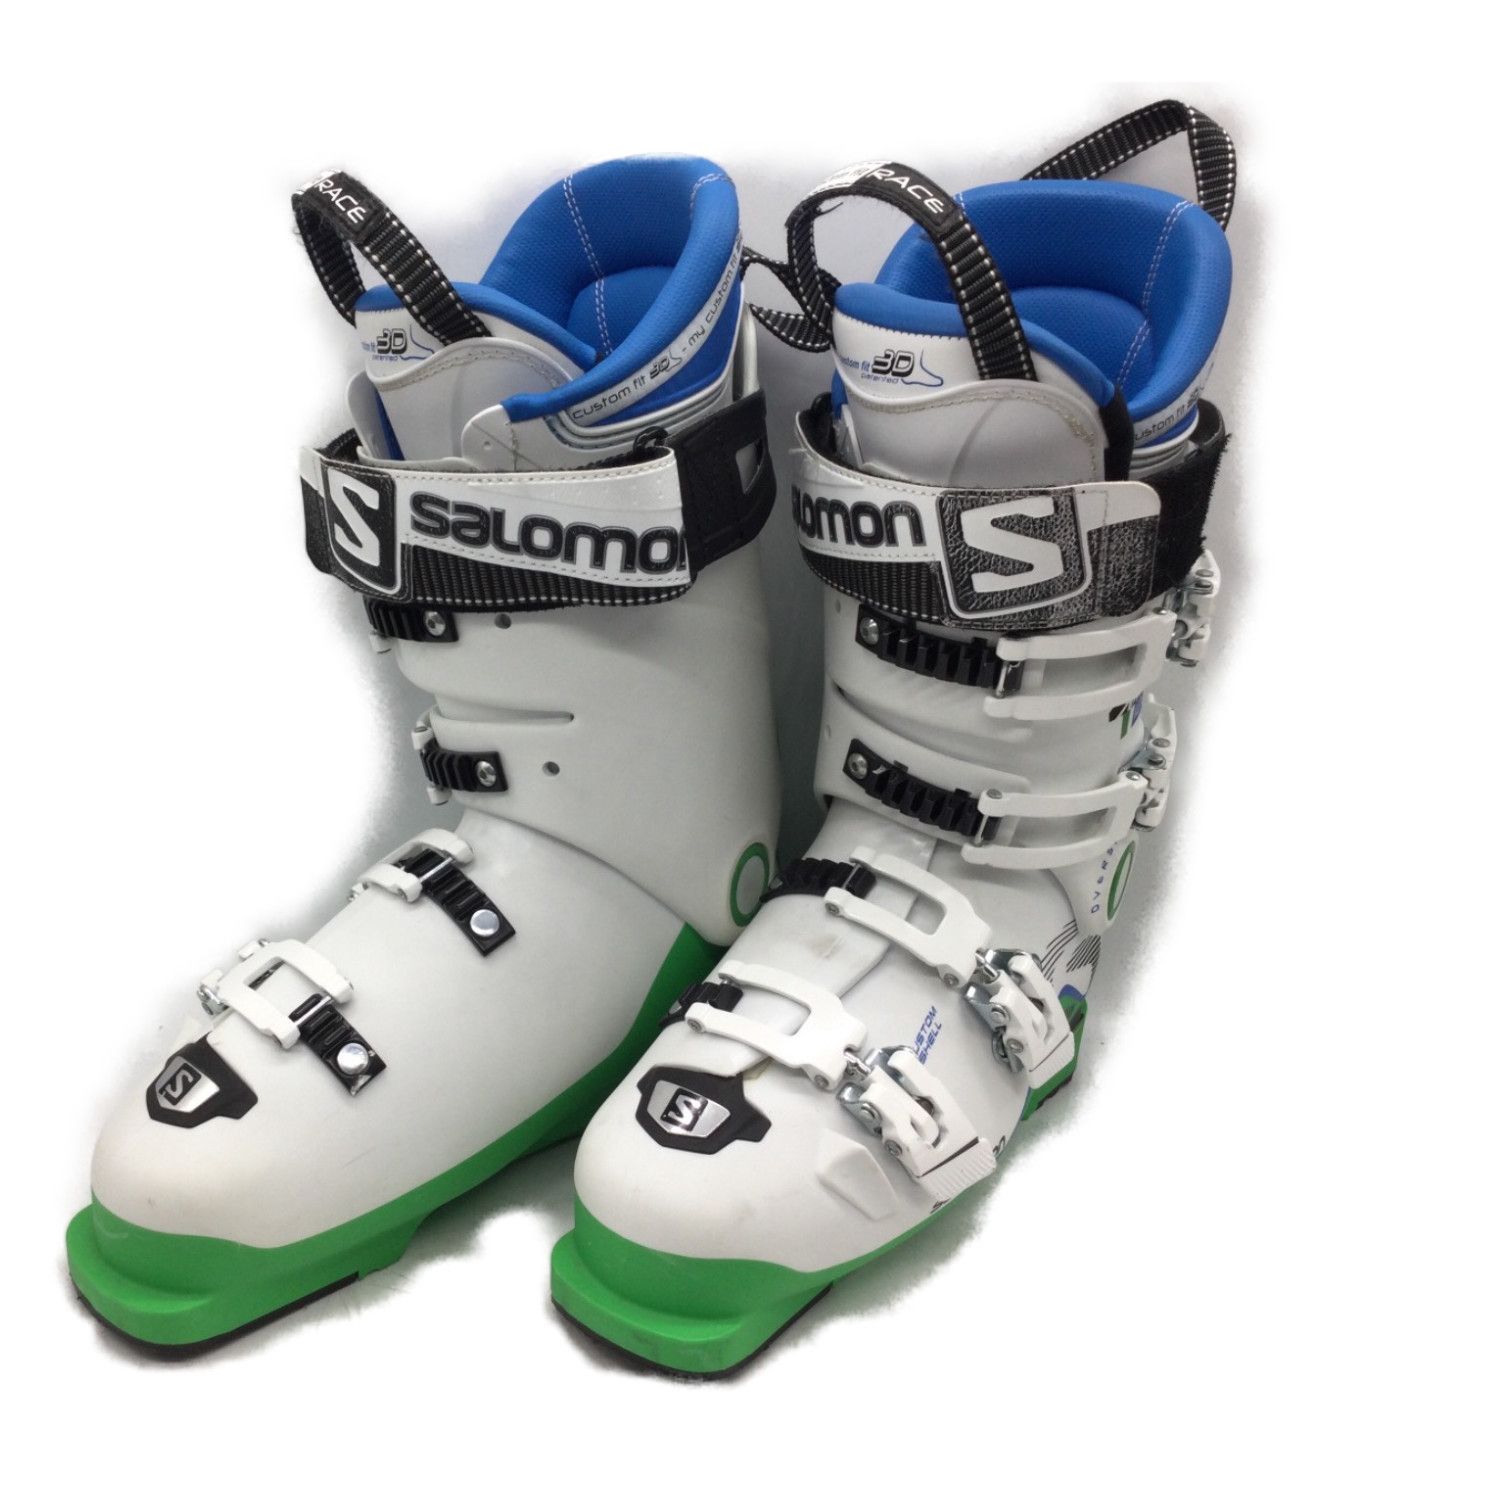 50％割引ブルー系,24.5cm割引価格 SALOMON(サロモン)スキーブーツ、靴 ブーツ(男性用) スキーブルー系24.5cm